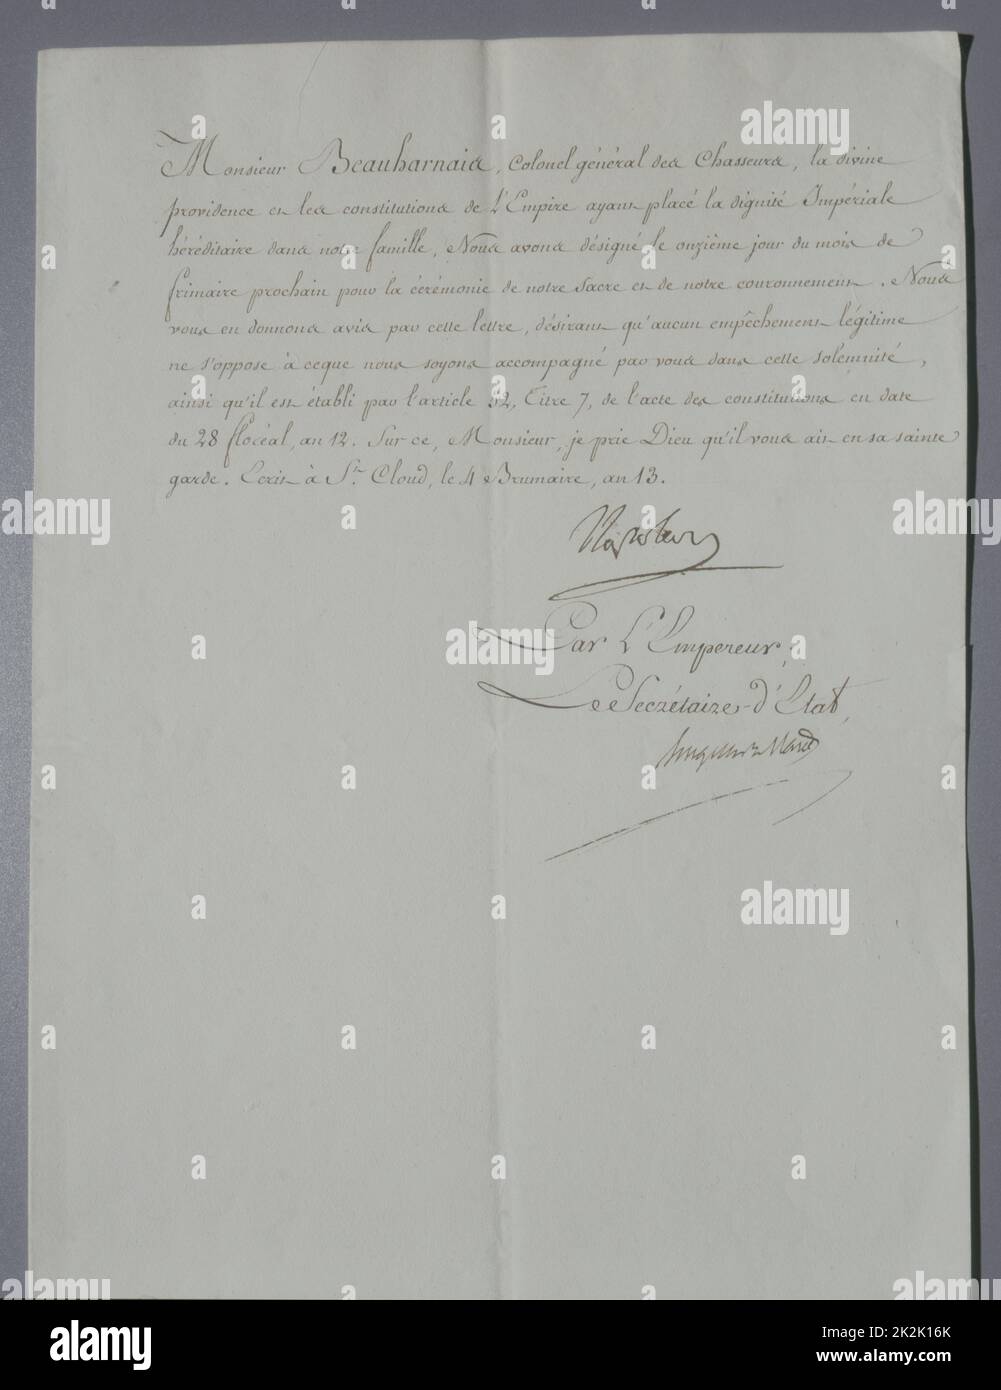 Incoronazione dell'Imperatore invito firmato da Napoleone e inviato a suo genero Eugène de Beauharnais per l'incoronazione il 2 dicembre 1804 Brumaire 4th, anno XIII 1 in-folio pagina Foto Stock